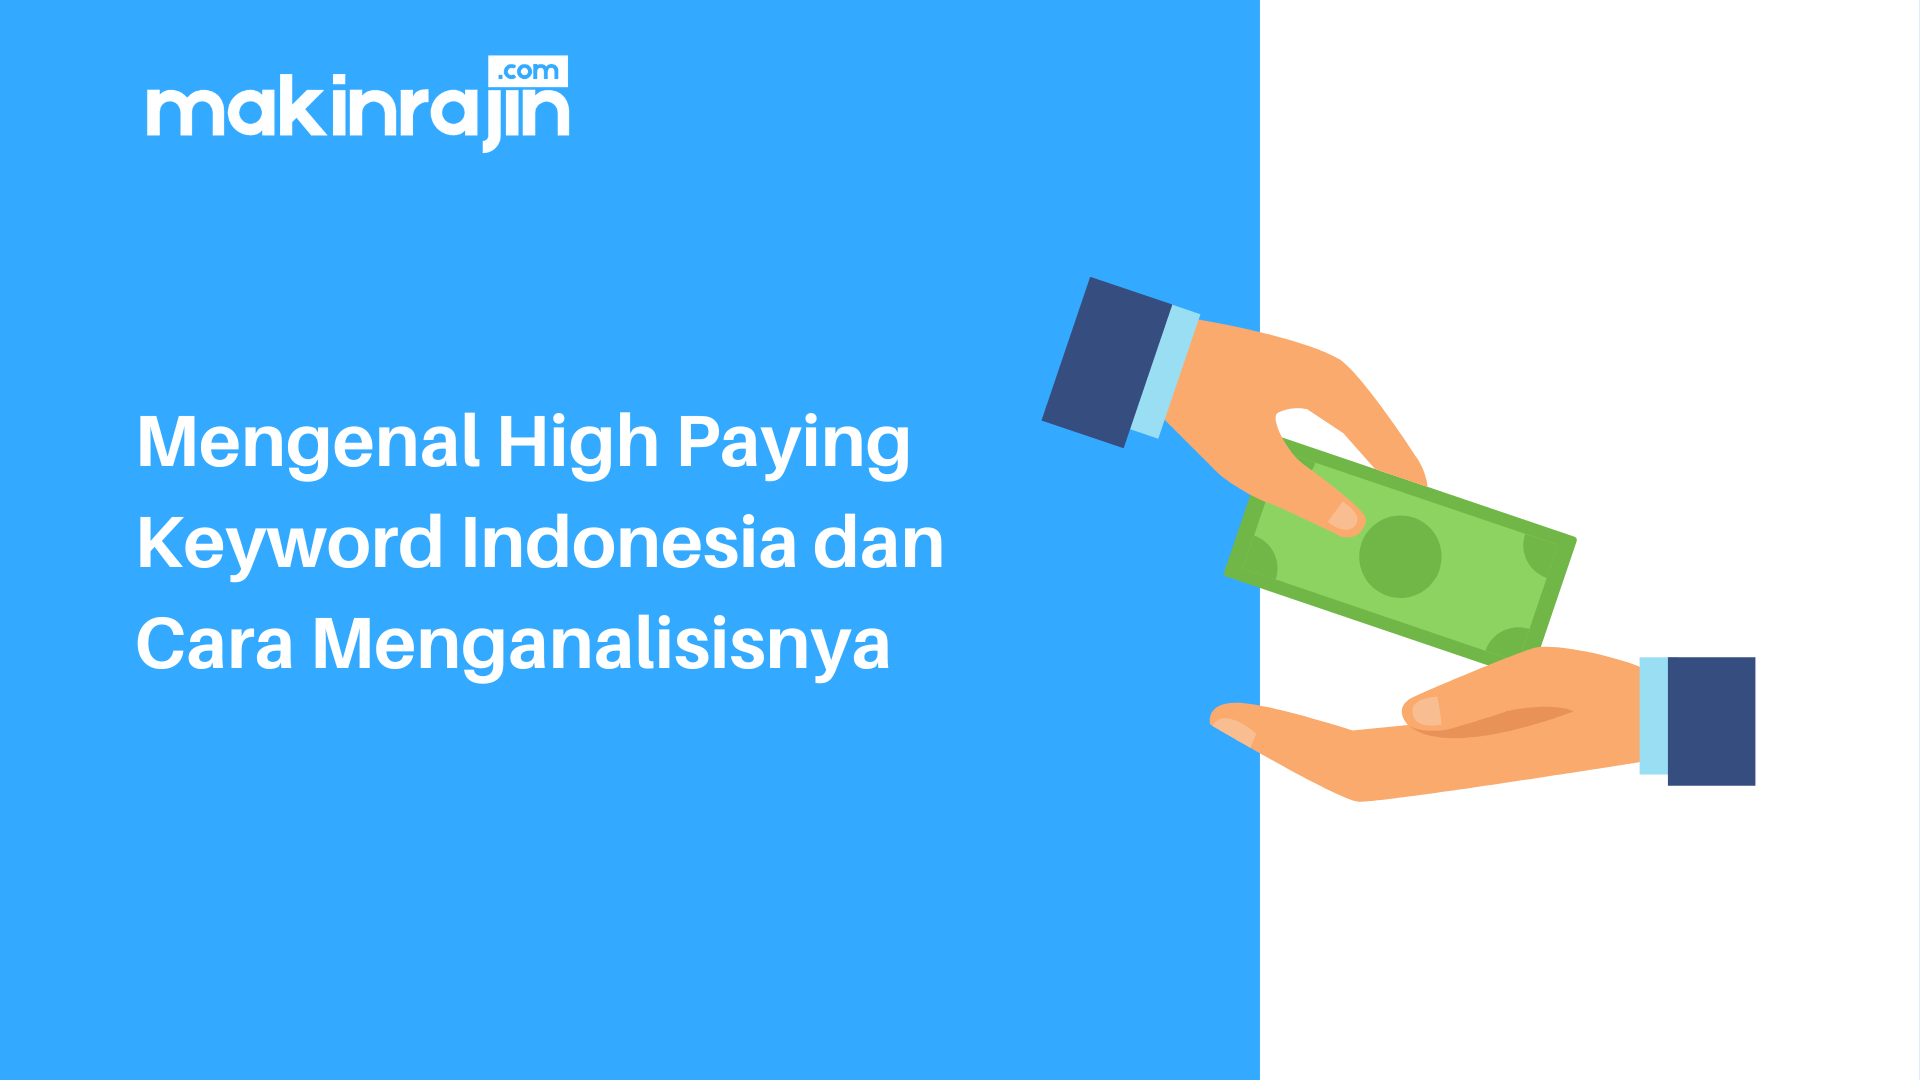 Mengenal High Paying Keyword Indonesia dan Cara Menganalisisnya